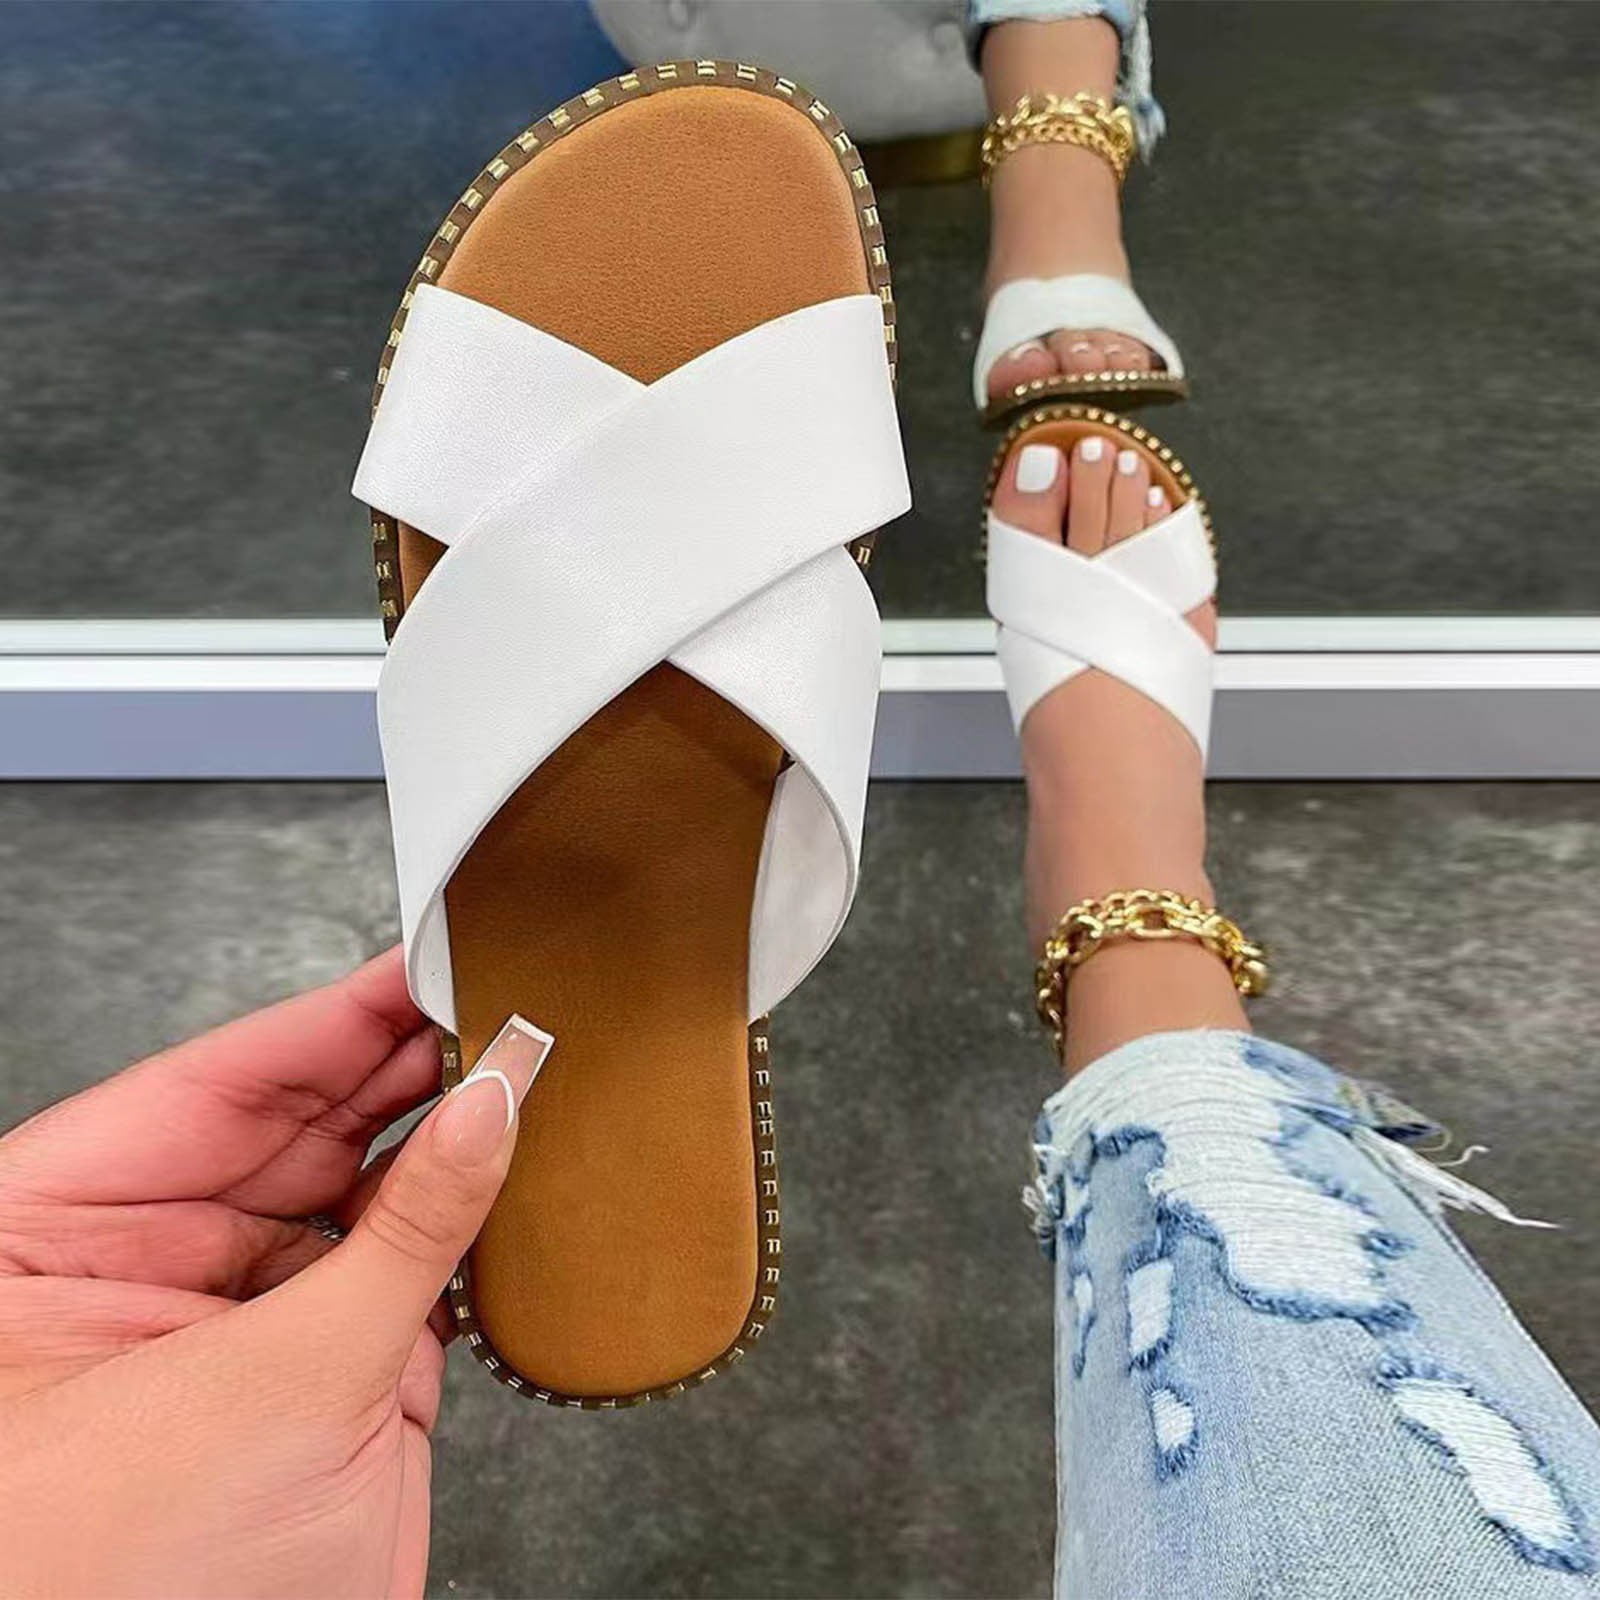 Summer Savings! Zpanxa Slippers for Womens Studded Flat Sandals Open Toe  Slip On Mule Slides Crossed Strap Slipper Flip Flops for Women White 41